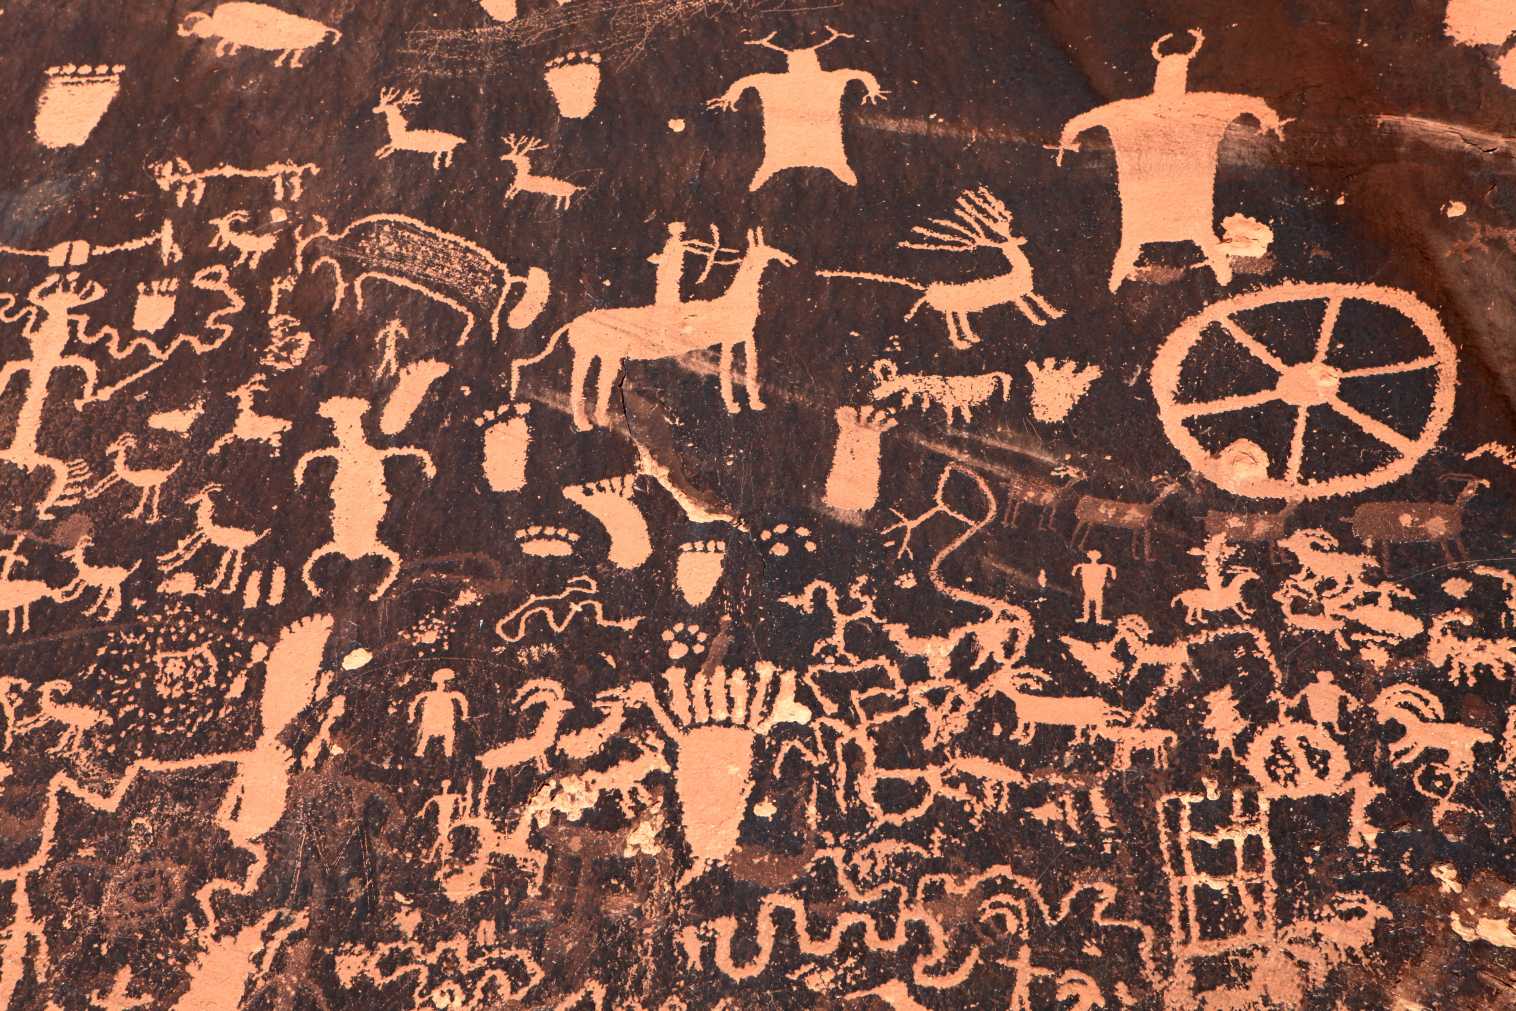 Anasazi petroglyphs ee jardiinada gobolka ee wargeyska Rock Rock, Utah, USA. Nasiib darro, Anasazigu ma lahayn luqad qoran, mana jiraan wax laga yaqaan magaca ay dhab ahaantii isugu yeeraan. © iStock